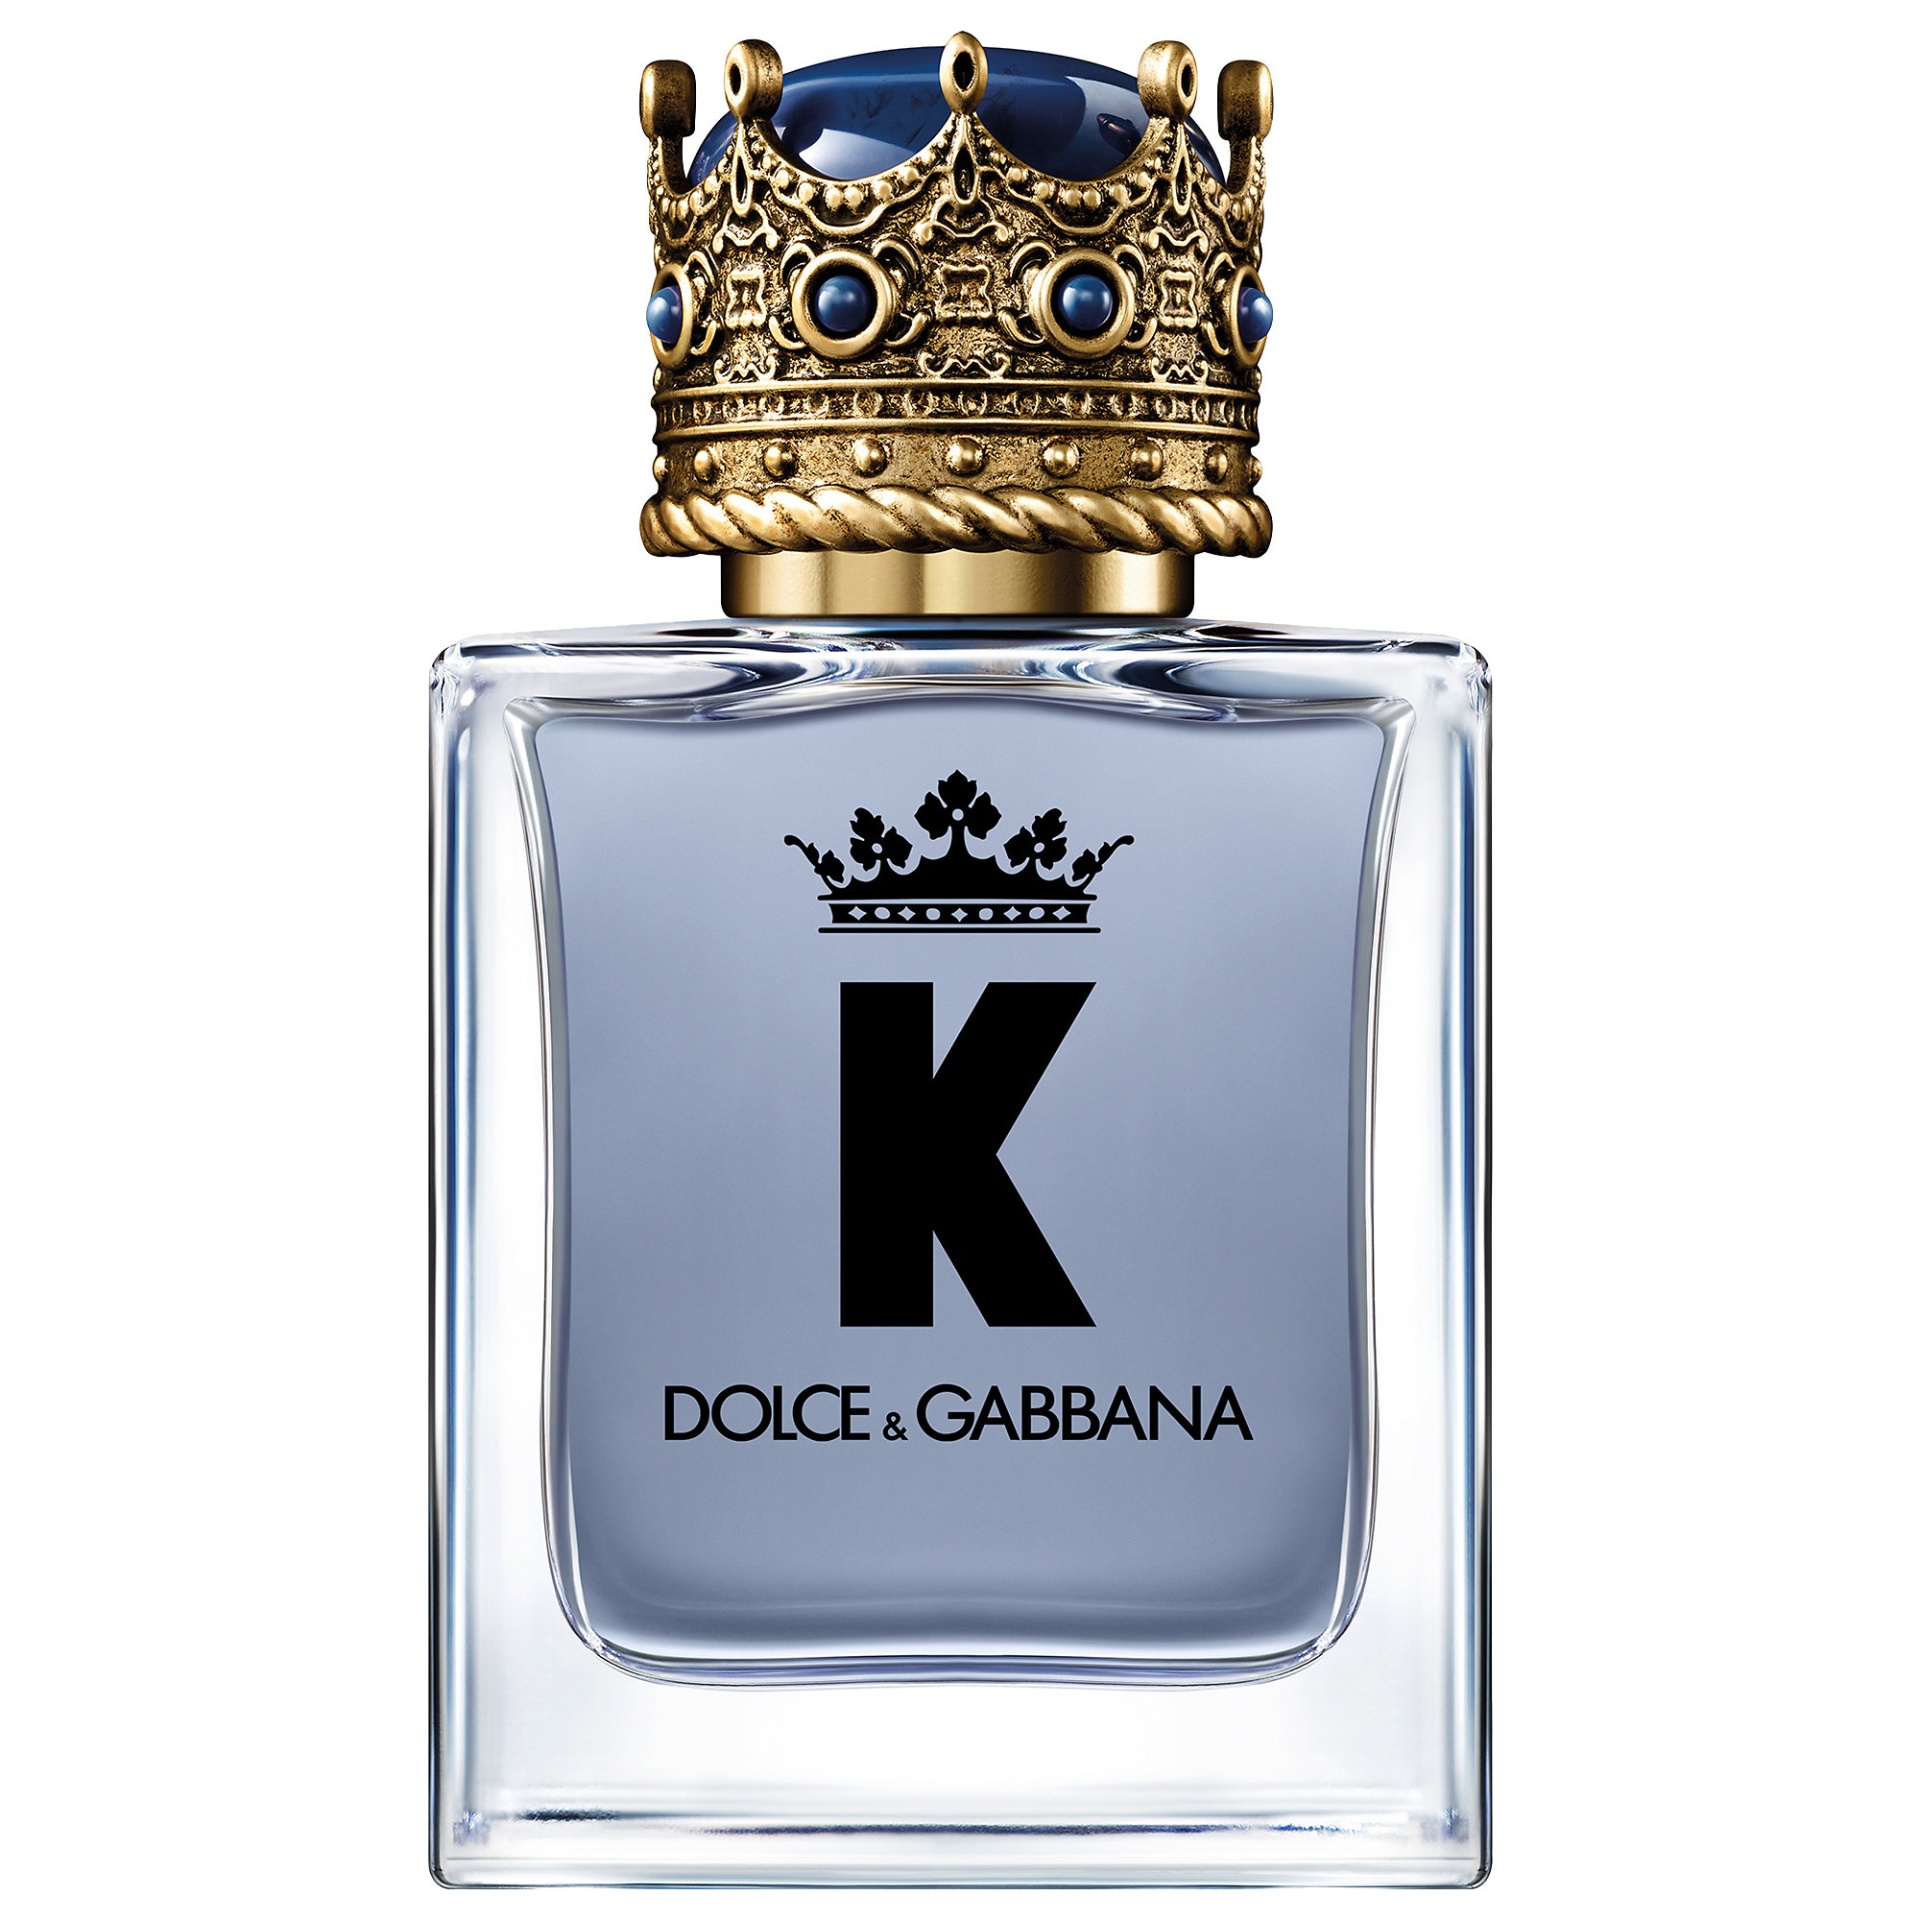 K by Dolce & Gabbana 1.6 oz/ 50 mL Eau de Toilette Spray 1.6 oz/ 50 ml ...